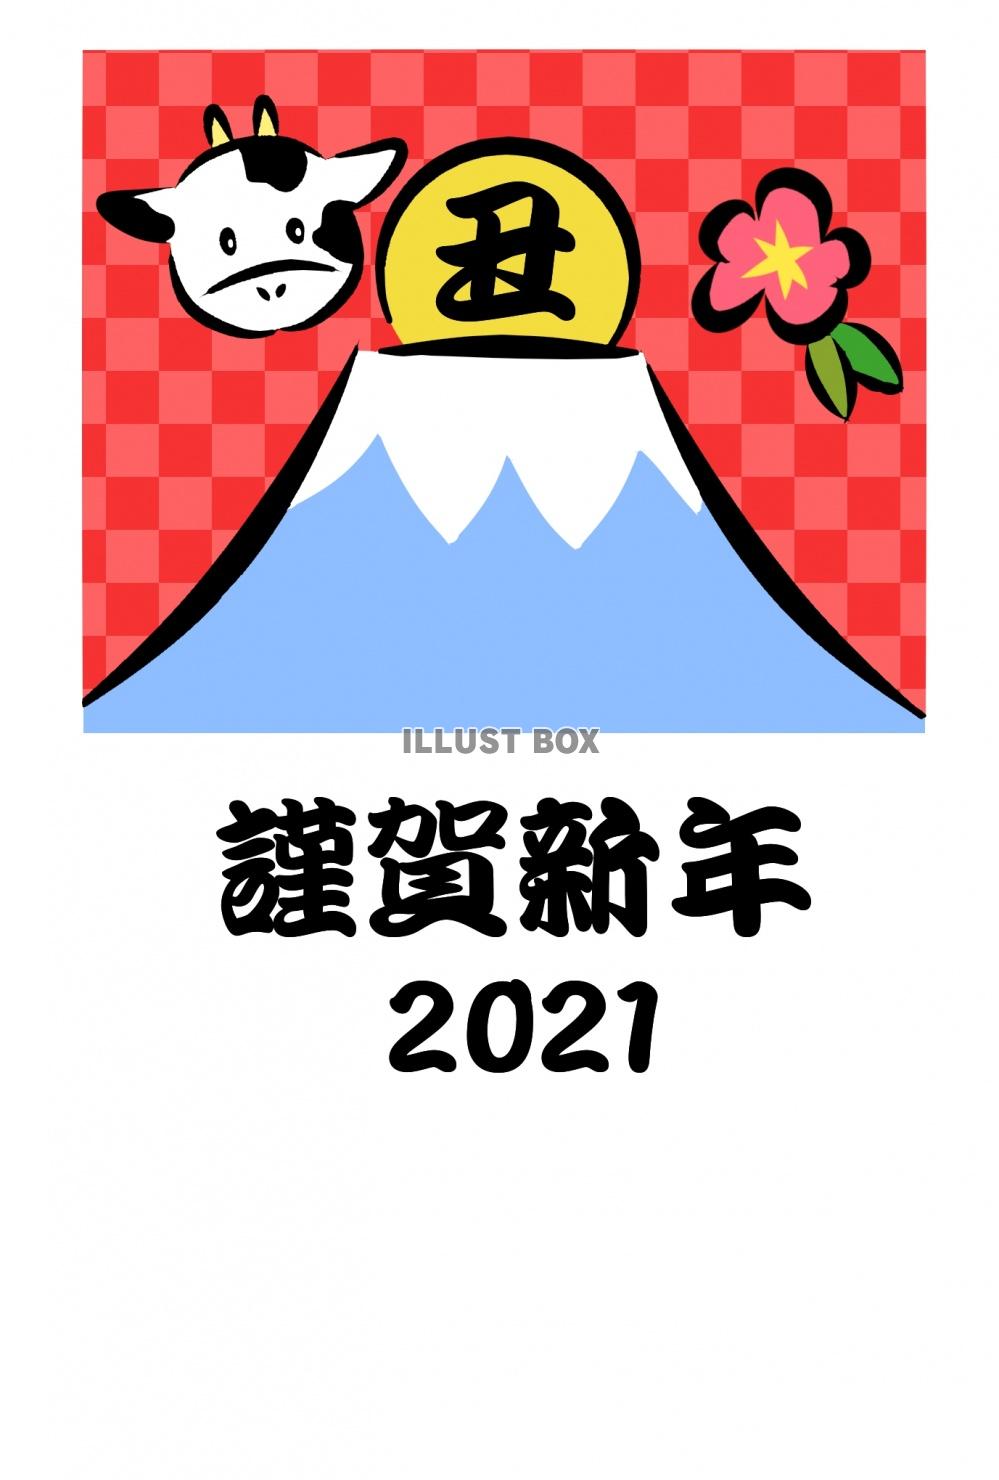 富士山と「丑」の文字入り初日の出2021の丑年年賀状